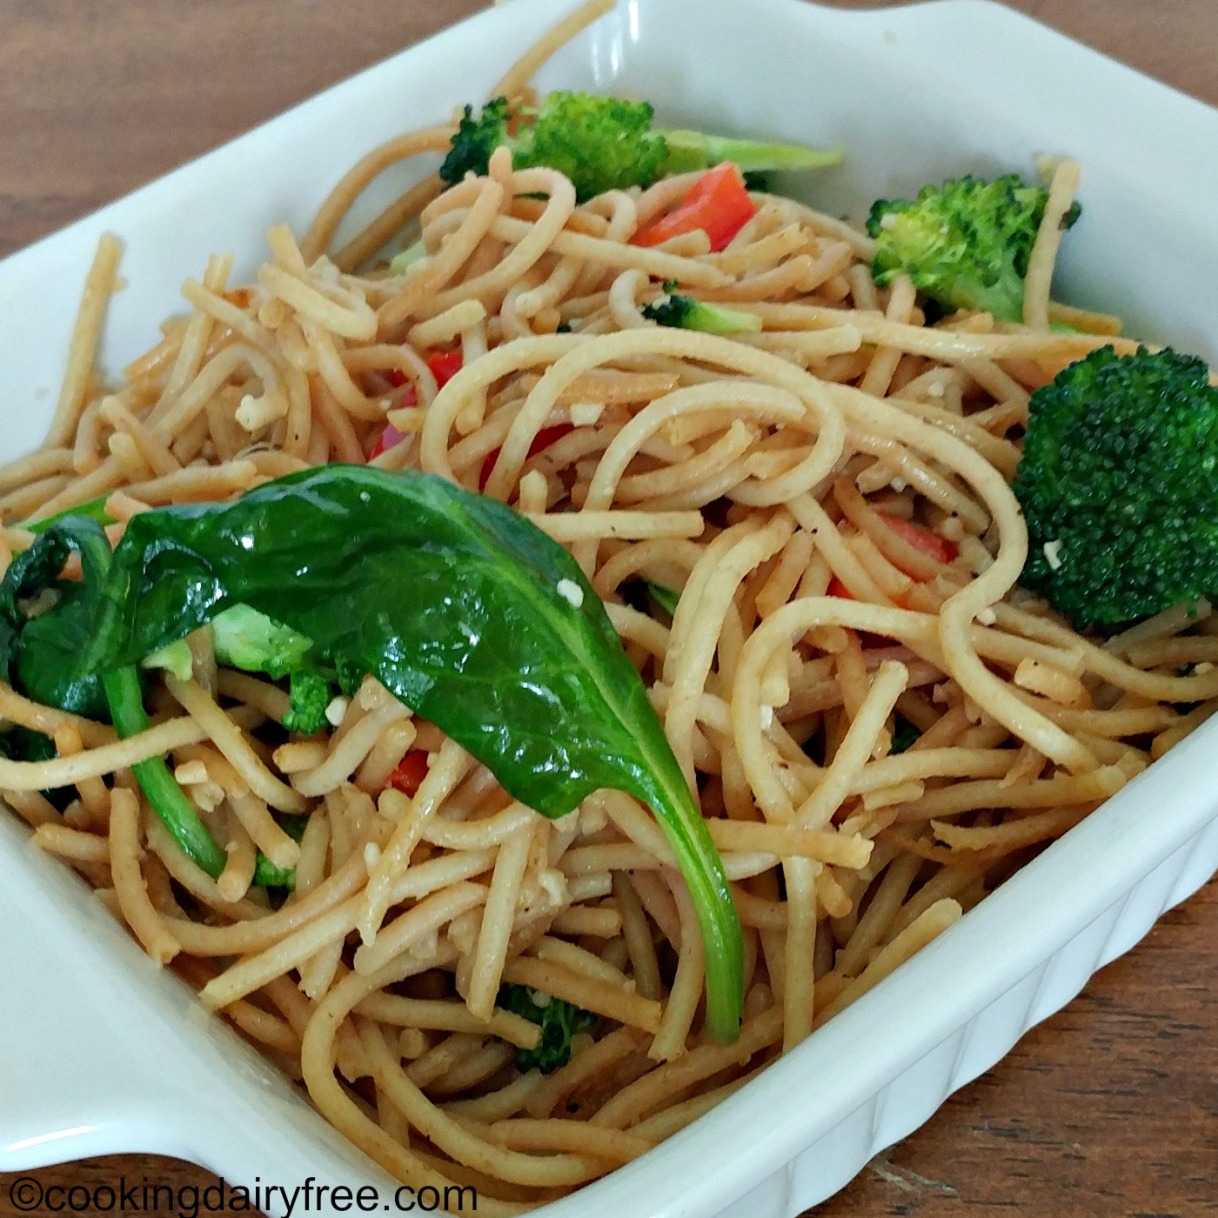 Garlic broccoli noodles 2